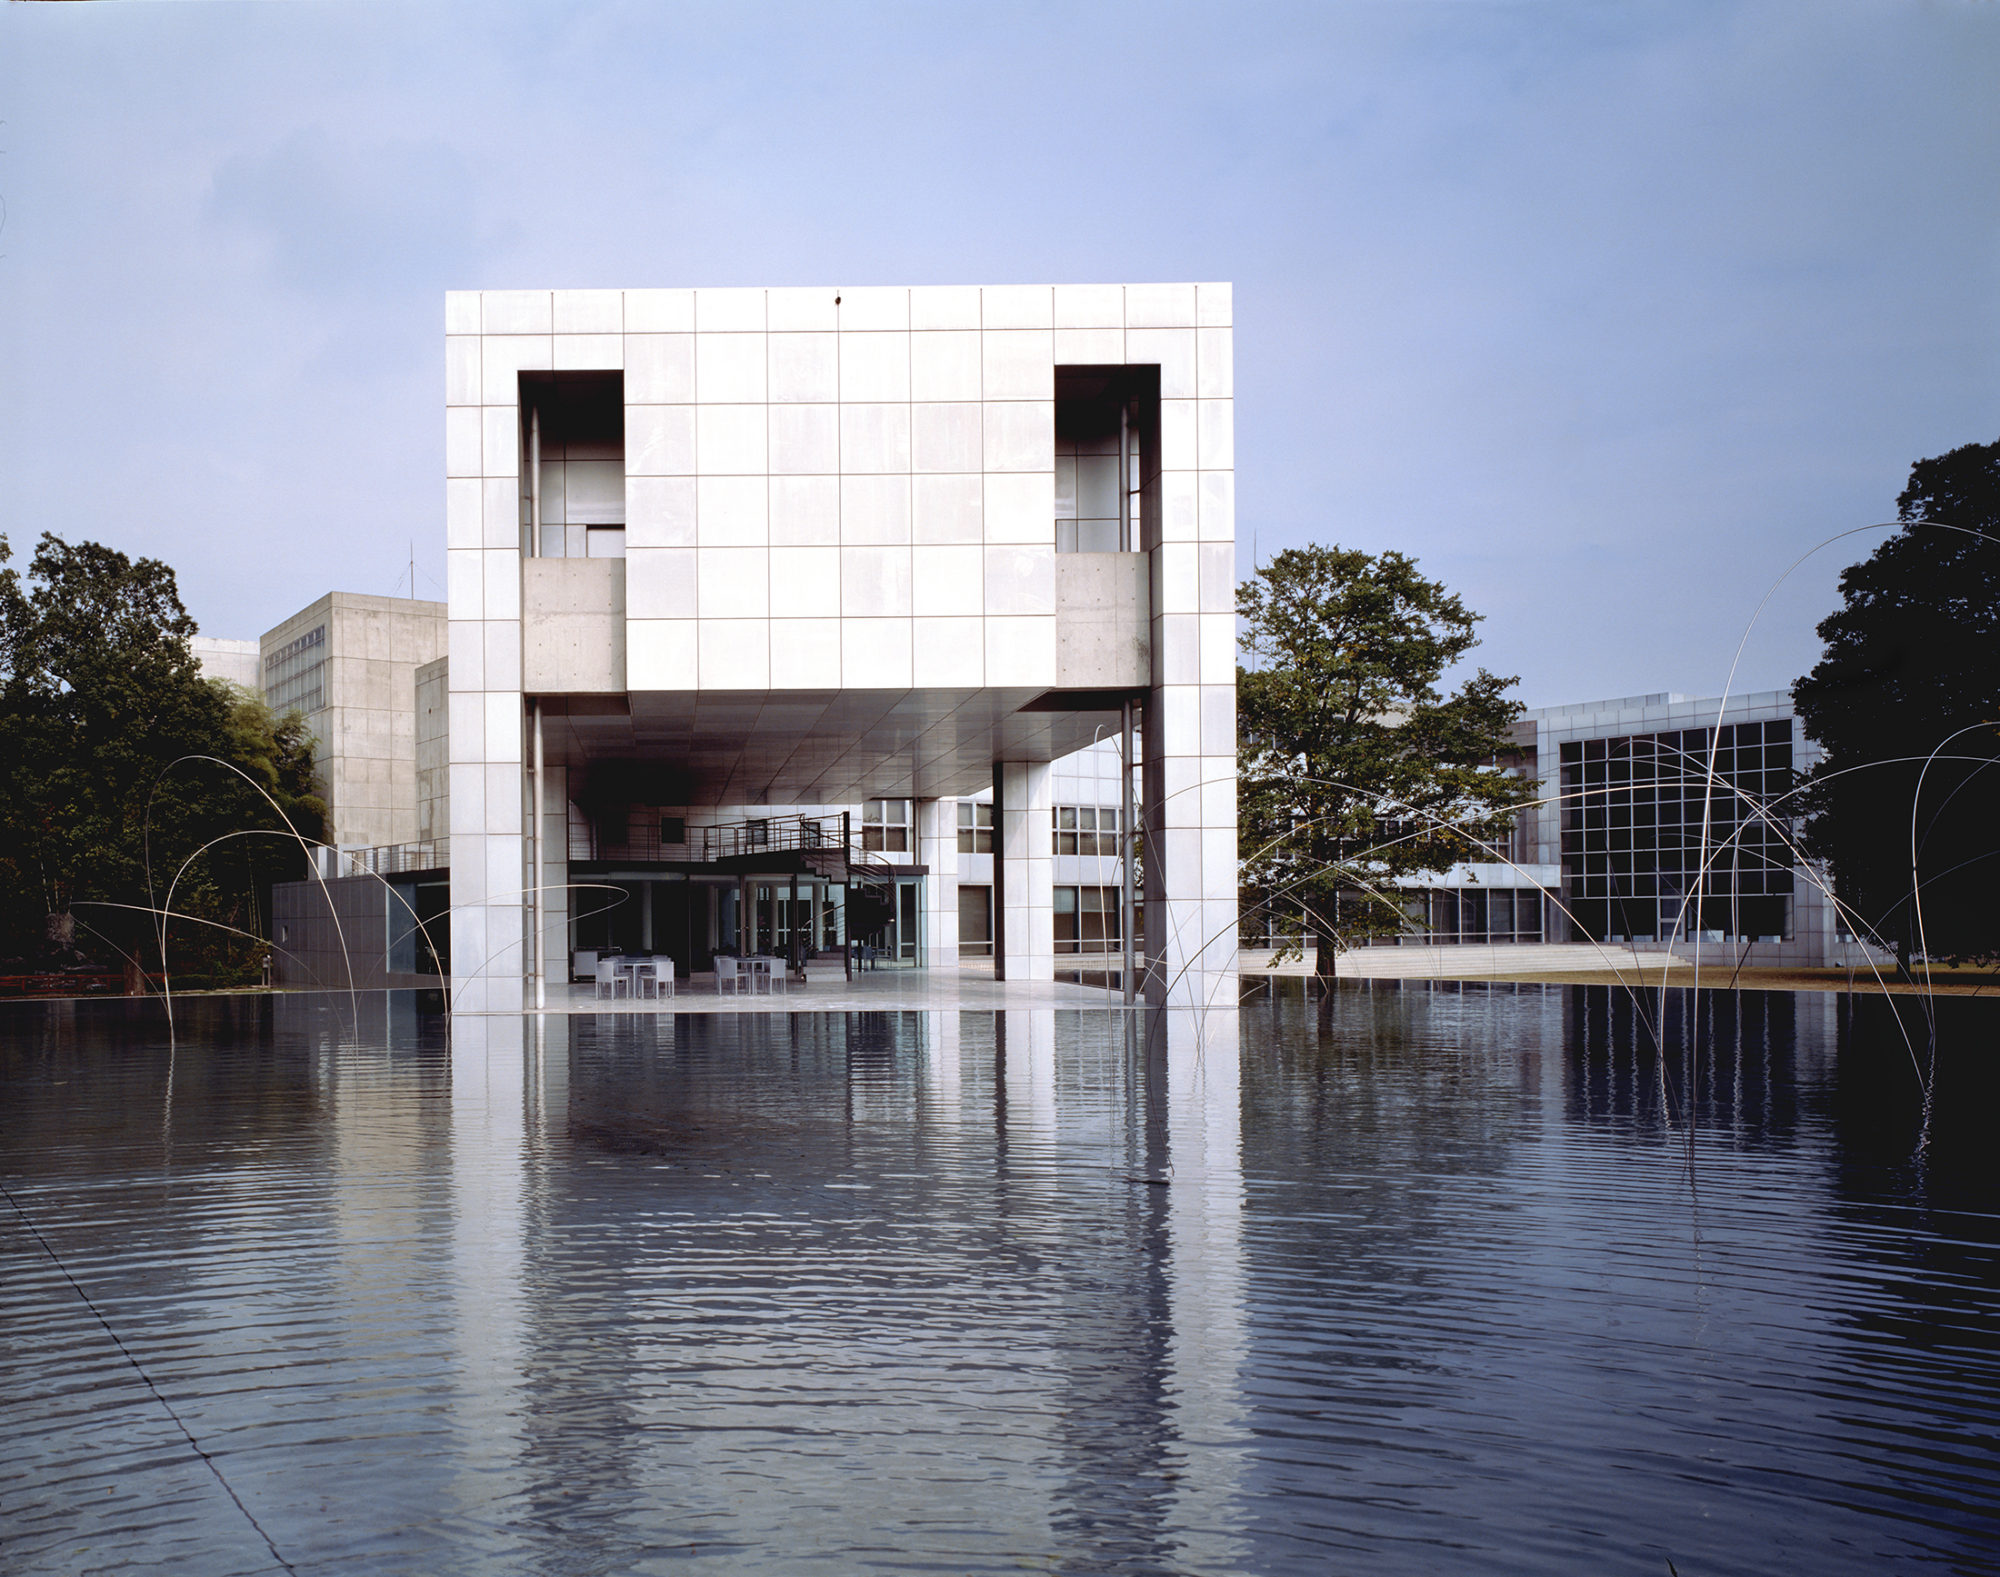  Музей современного искусства, Арат Исодзаки. Гумма, Япония, 1974